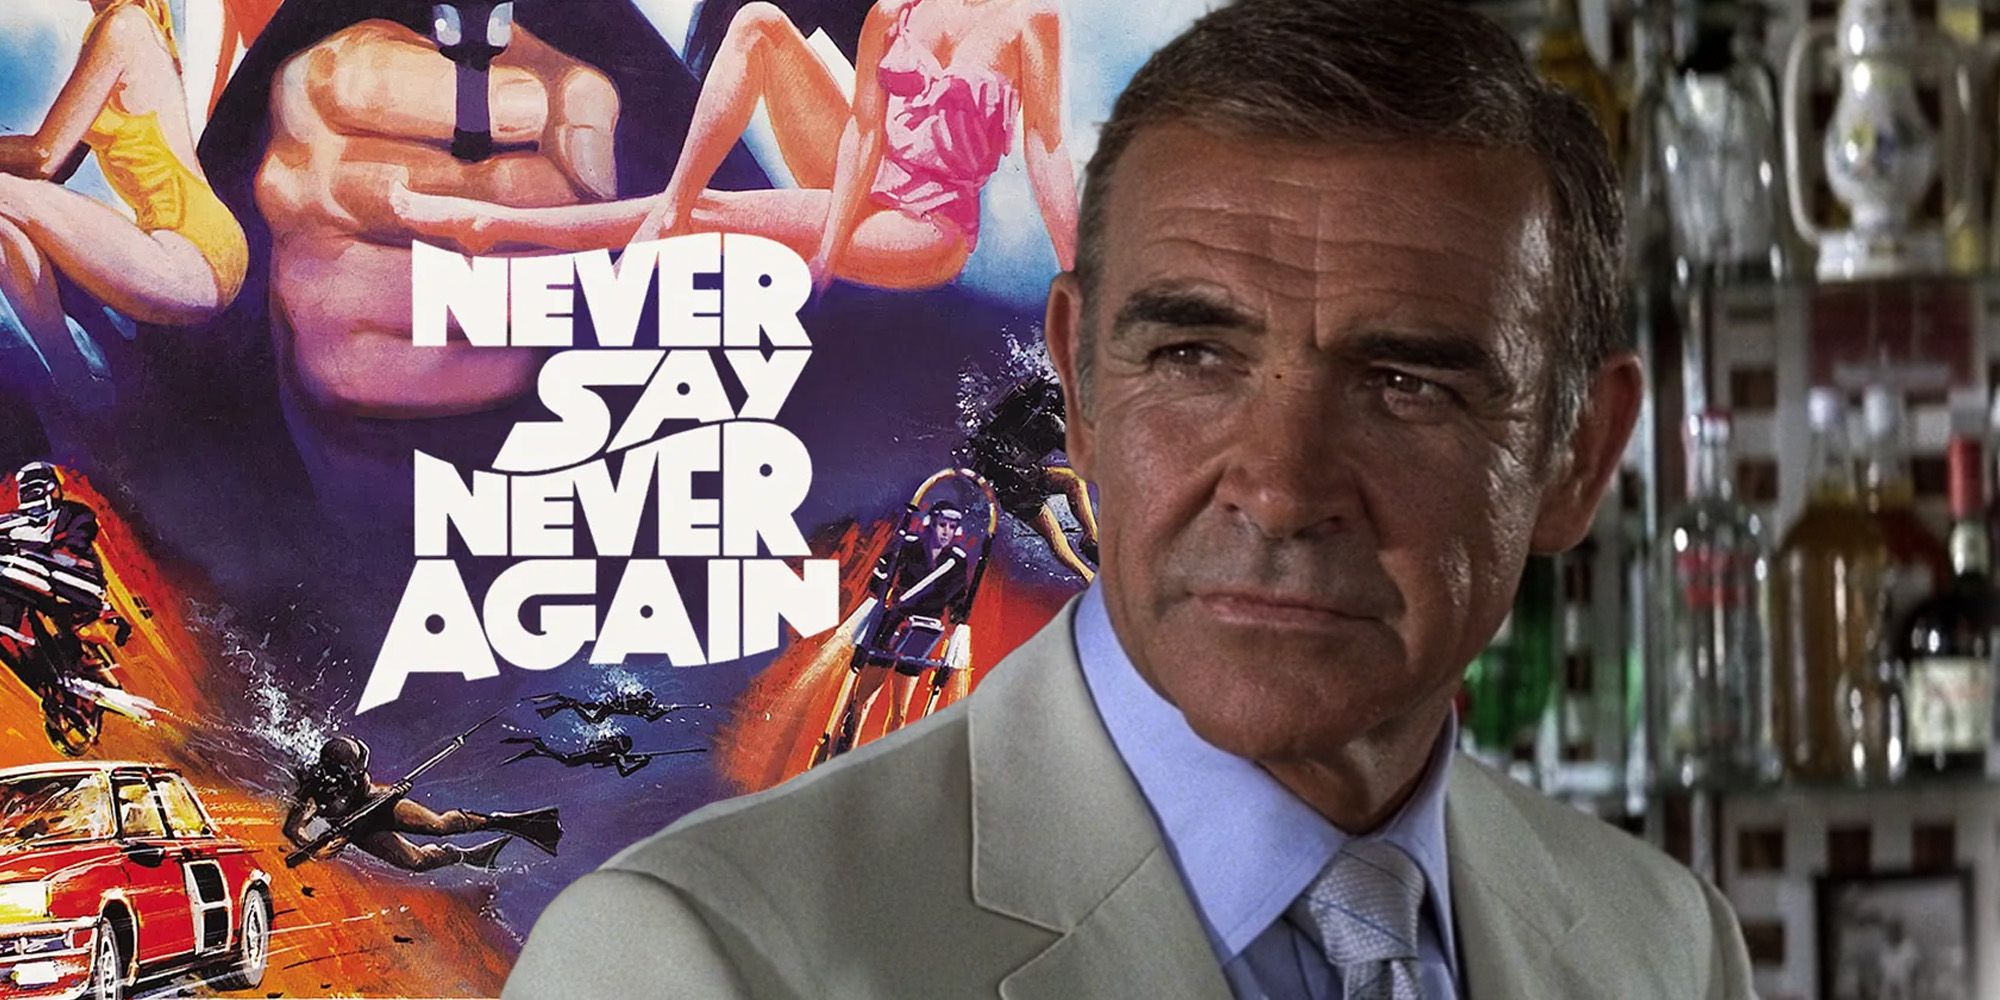 Sean-Connery-Never-say-never-again.jpg